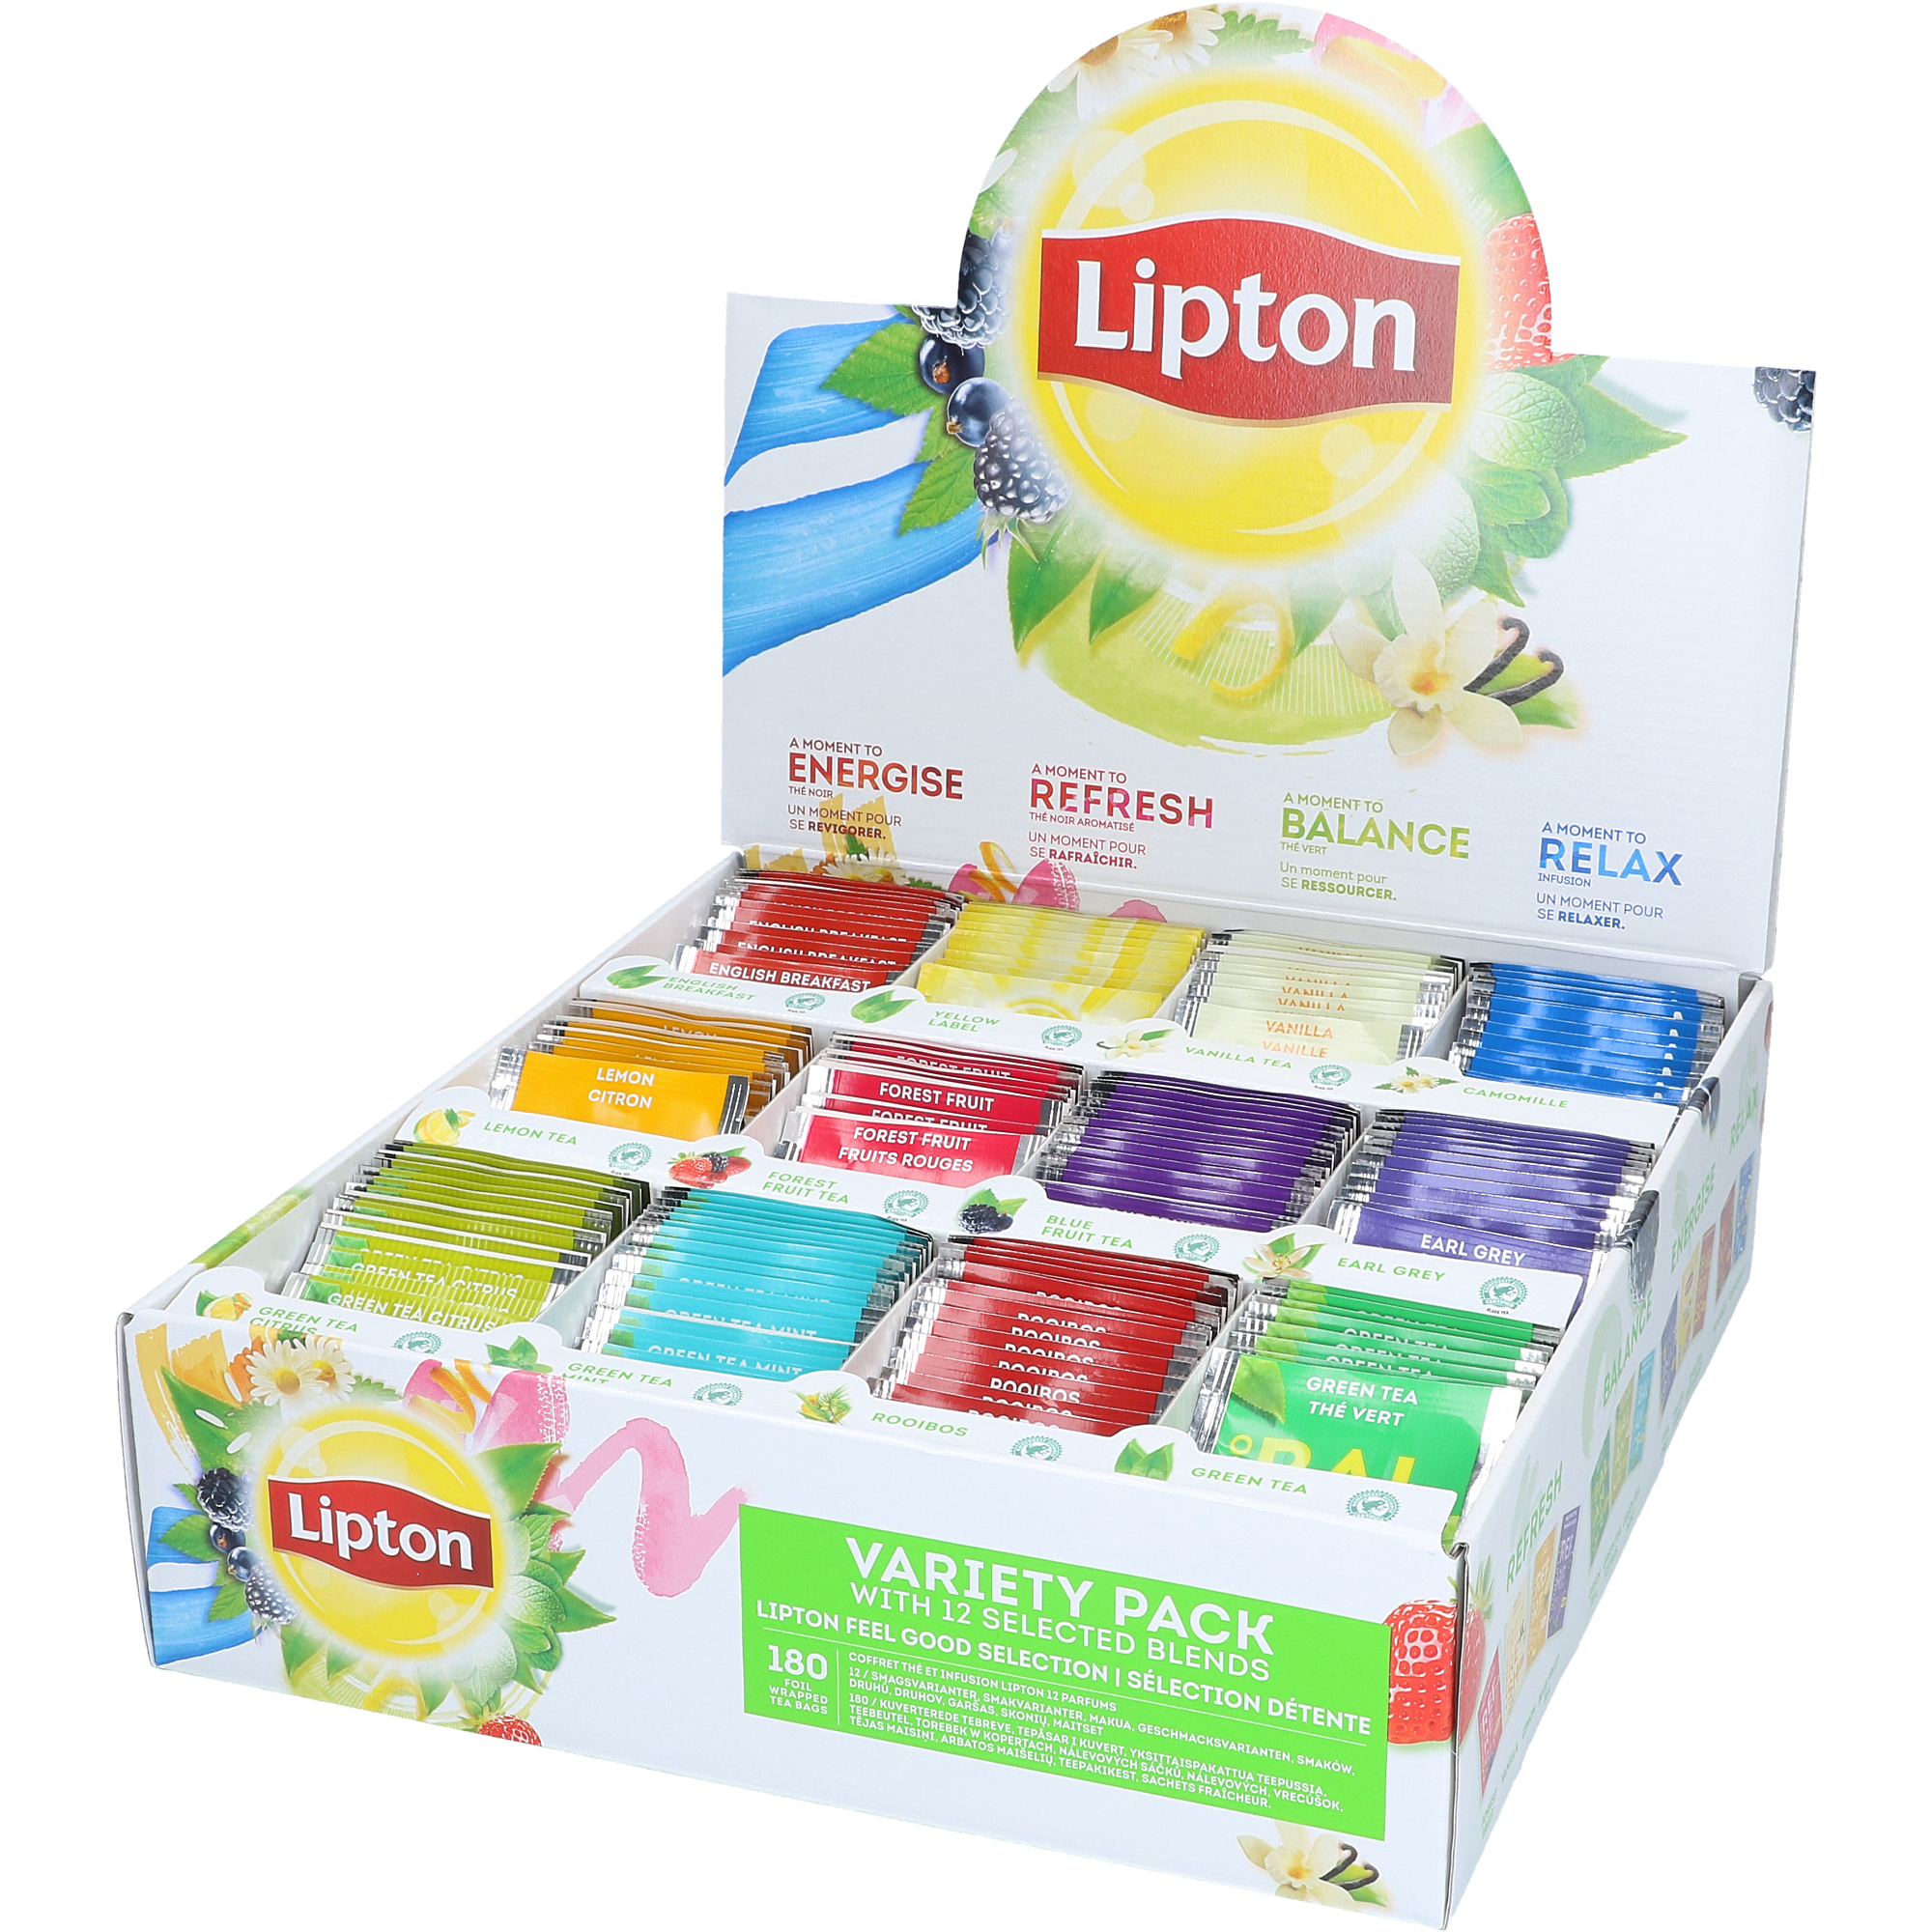 Boks med Lipton te